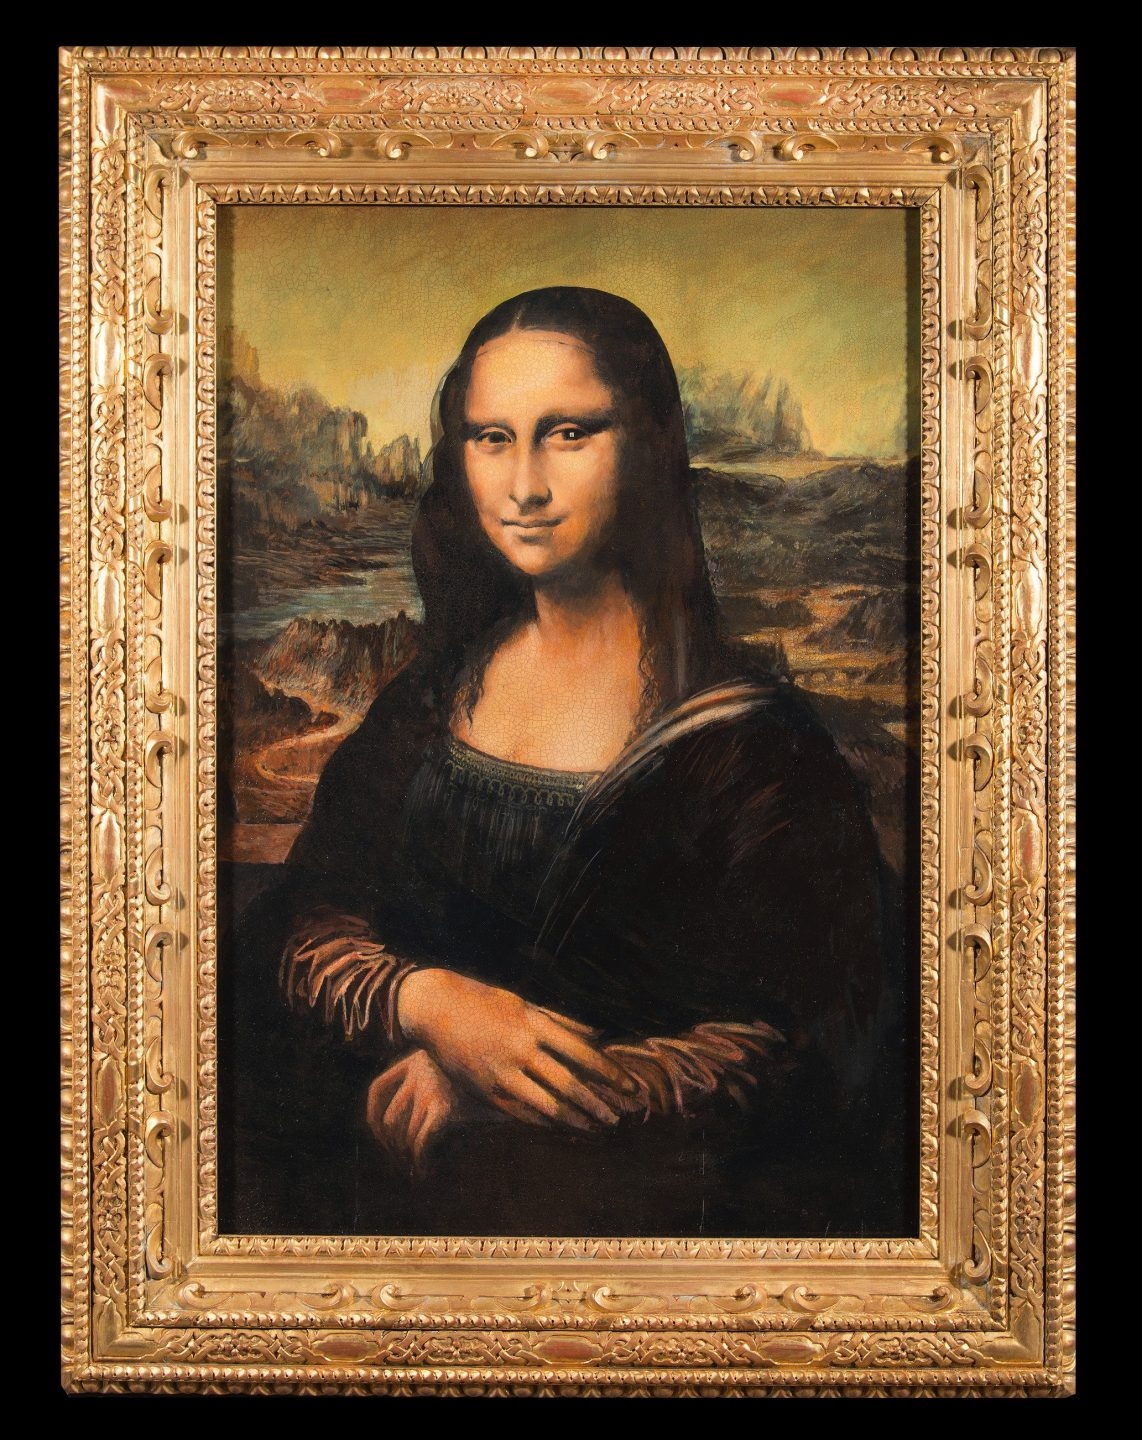 La réplica falsificada de la Mona Lisa.